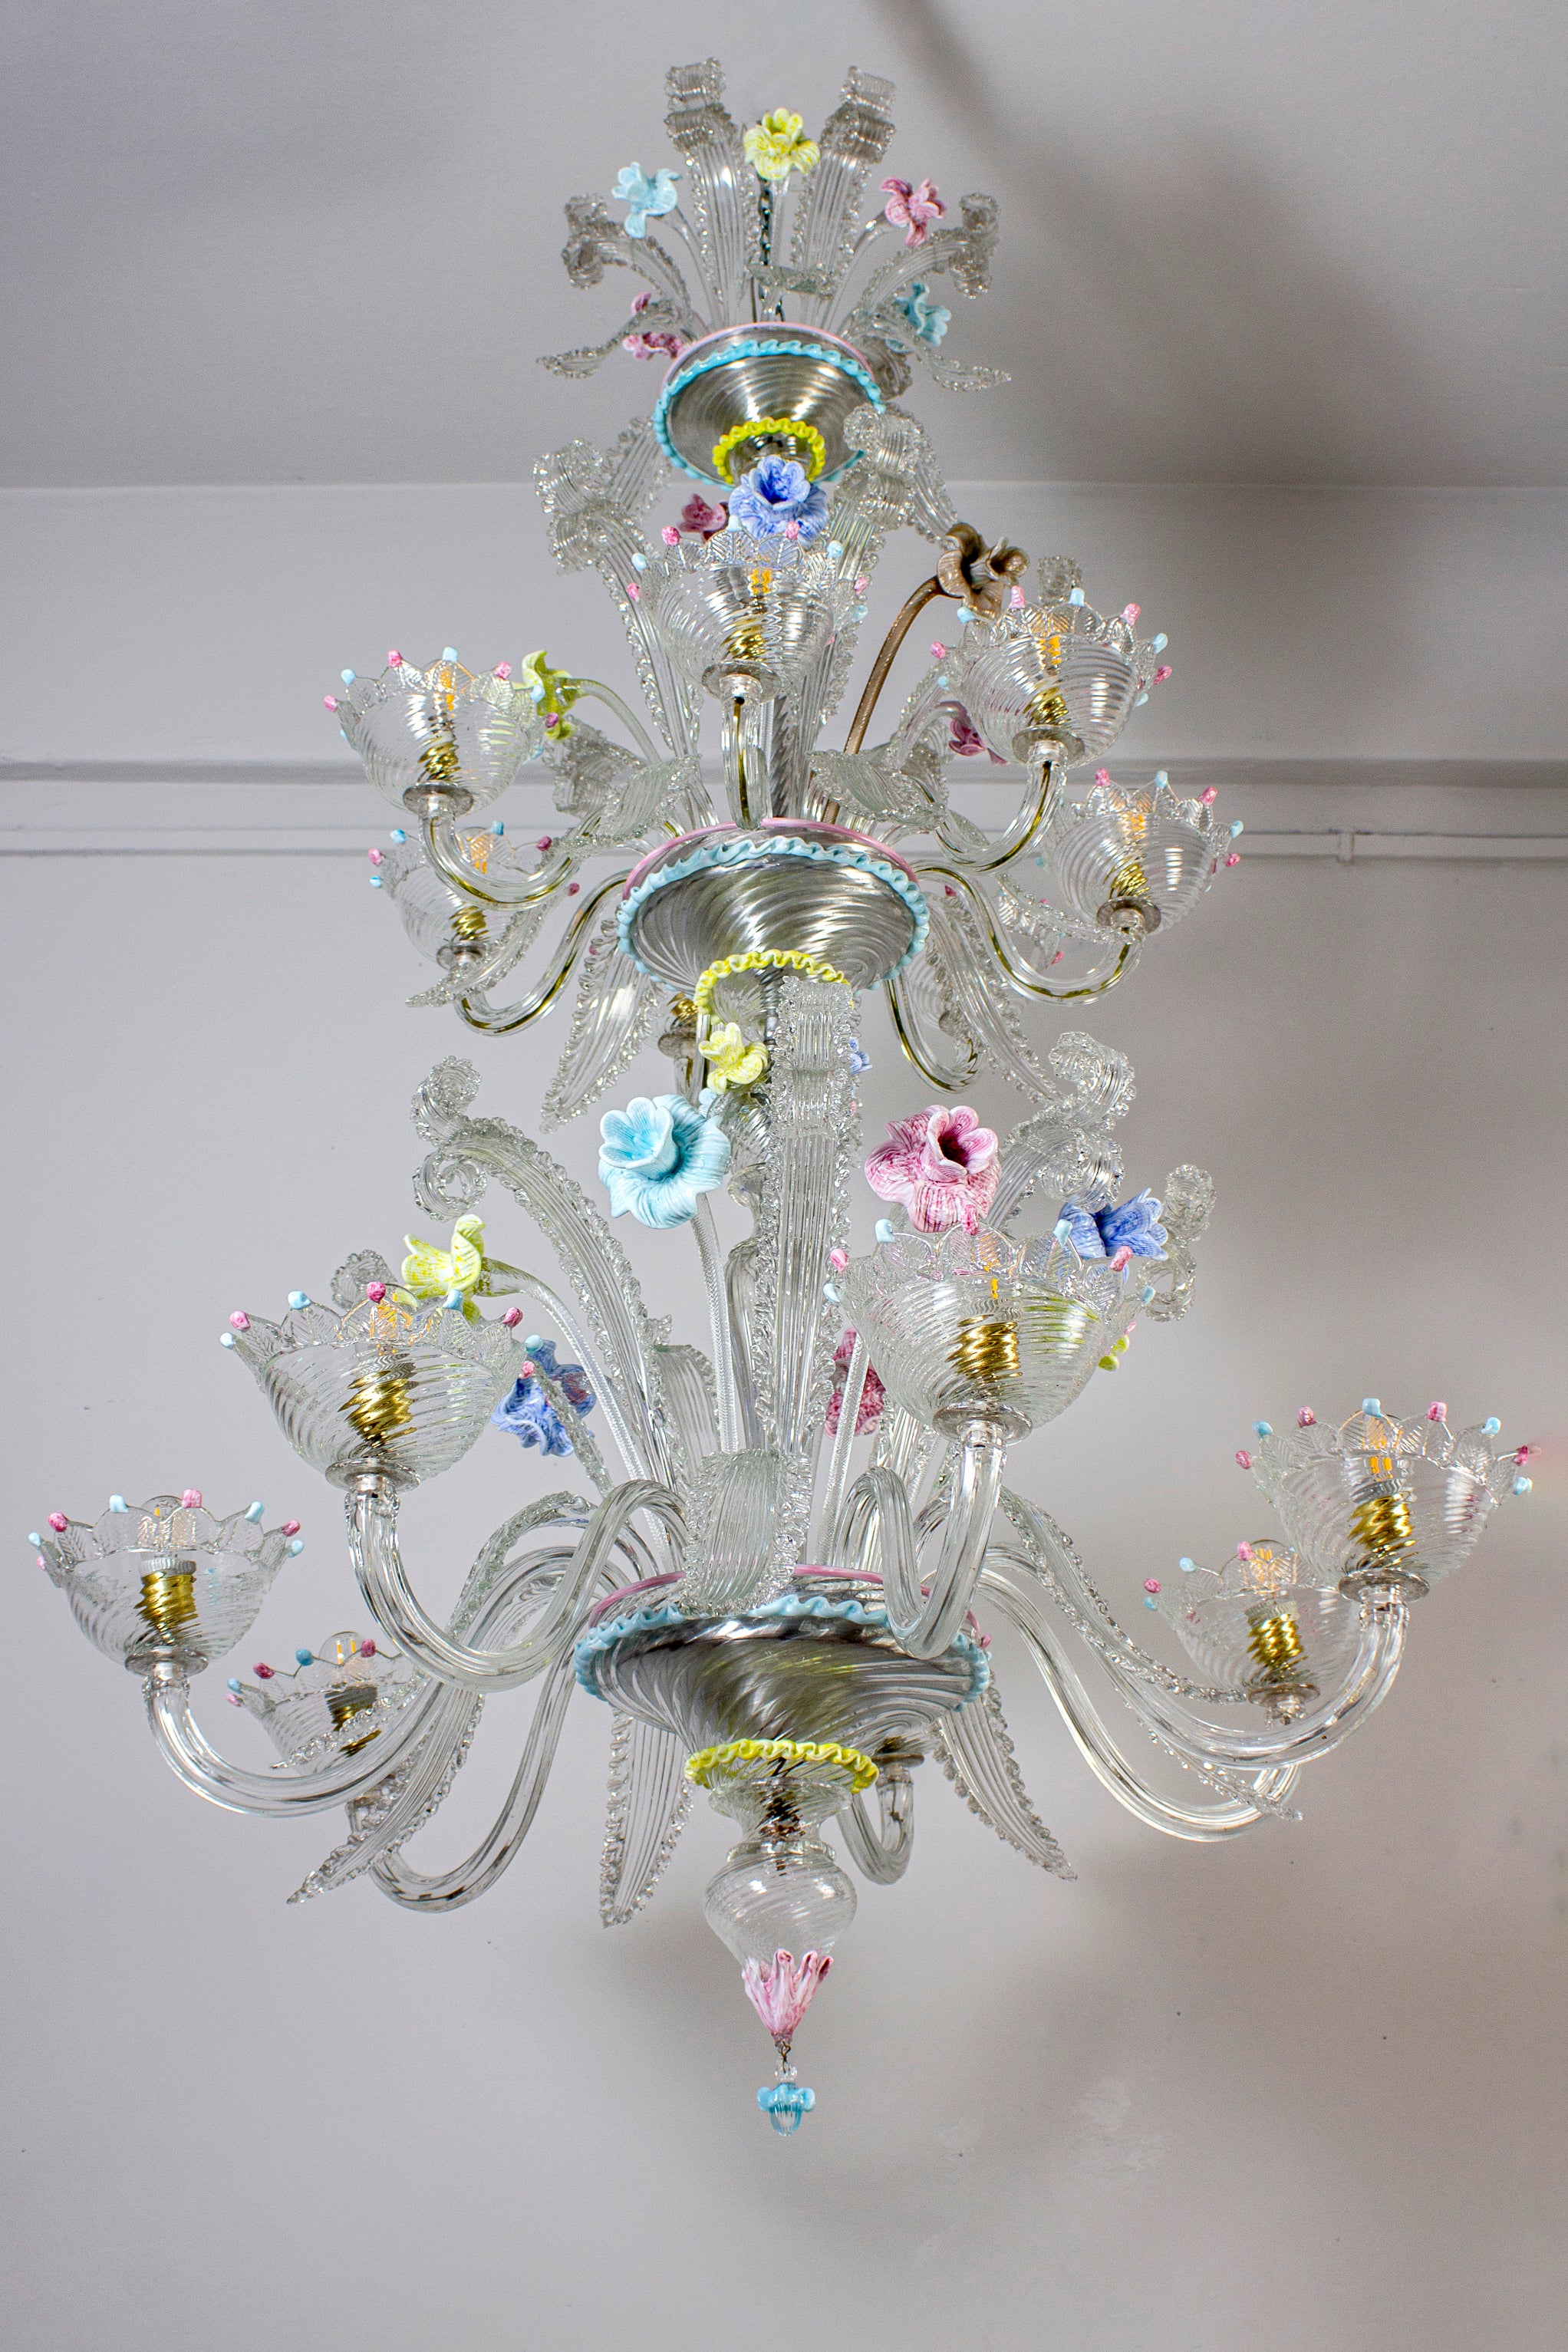 Spektakulärer Murano-Kronleuchter. Die Arme 14 sind auf zwei Etagen angeordnet. Die Gläser sind mit bunten Dekorationen verziert  und erstaunliche mehrfarbige Blumen. 
 14 Glühbirnen mit 7 E27 und 7 E 14  oder wir können alles verkabeln  mit E 14